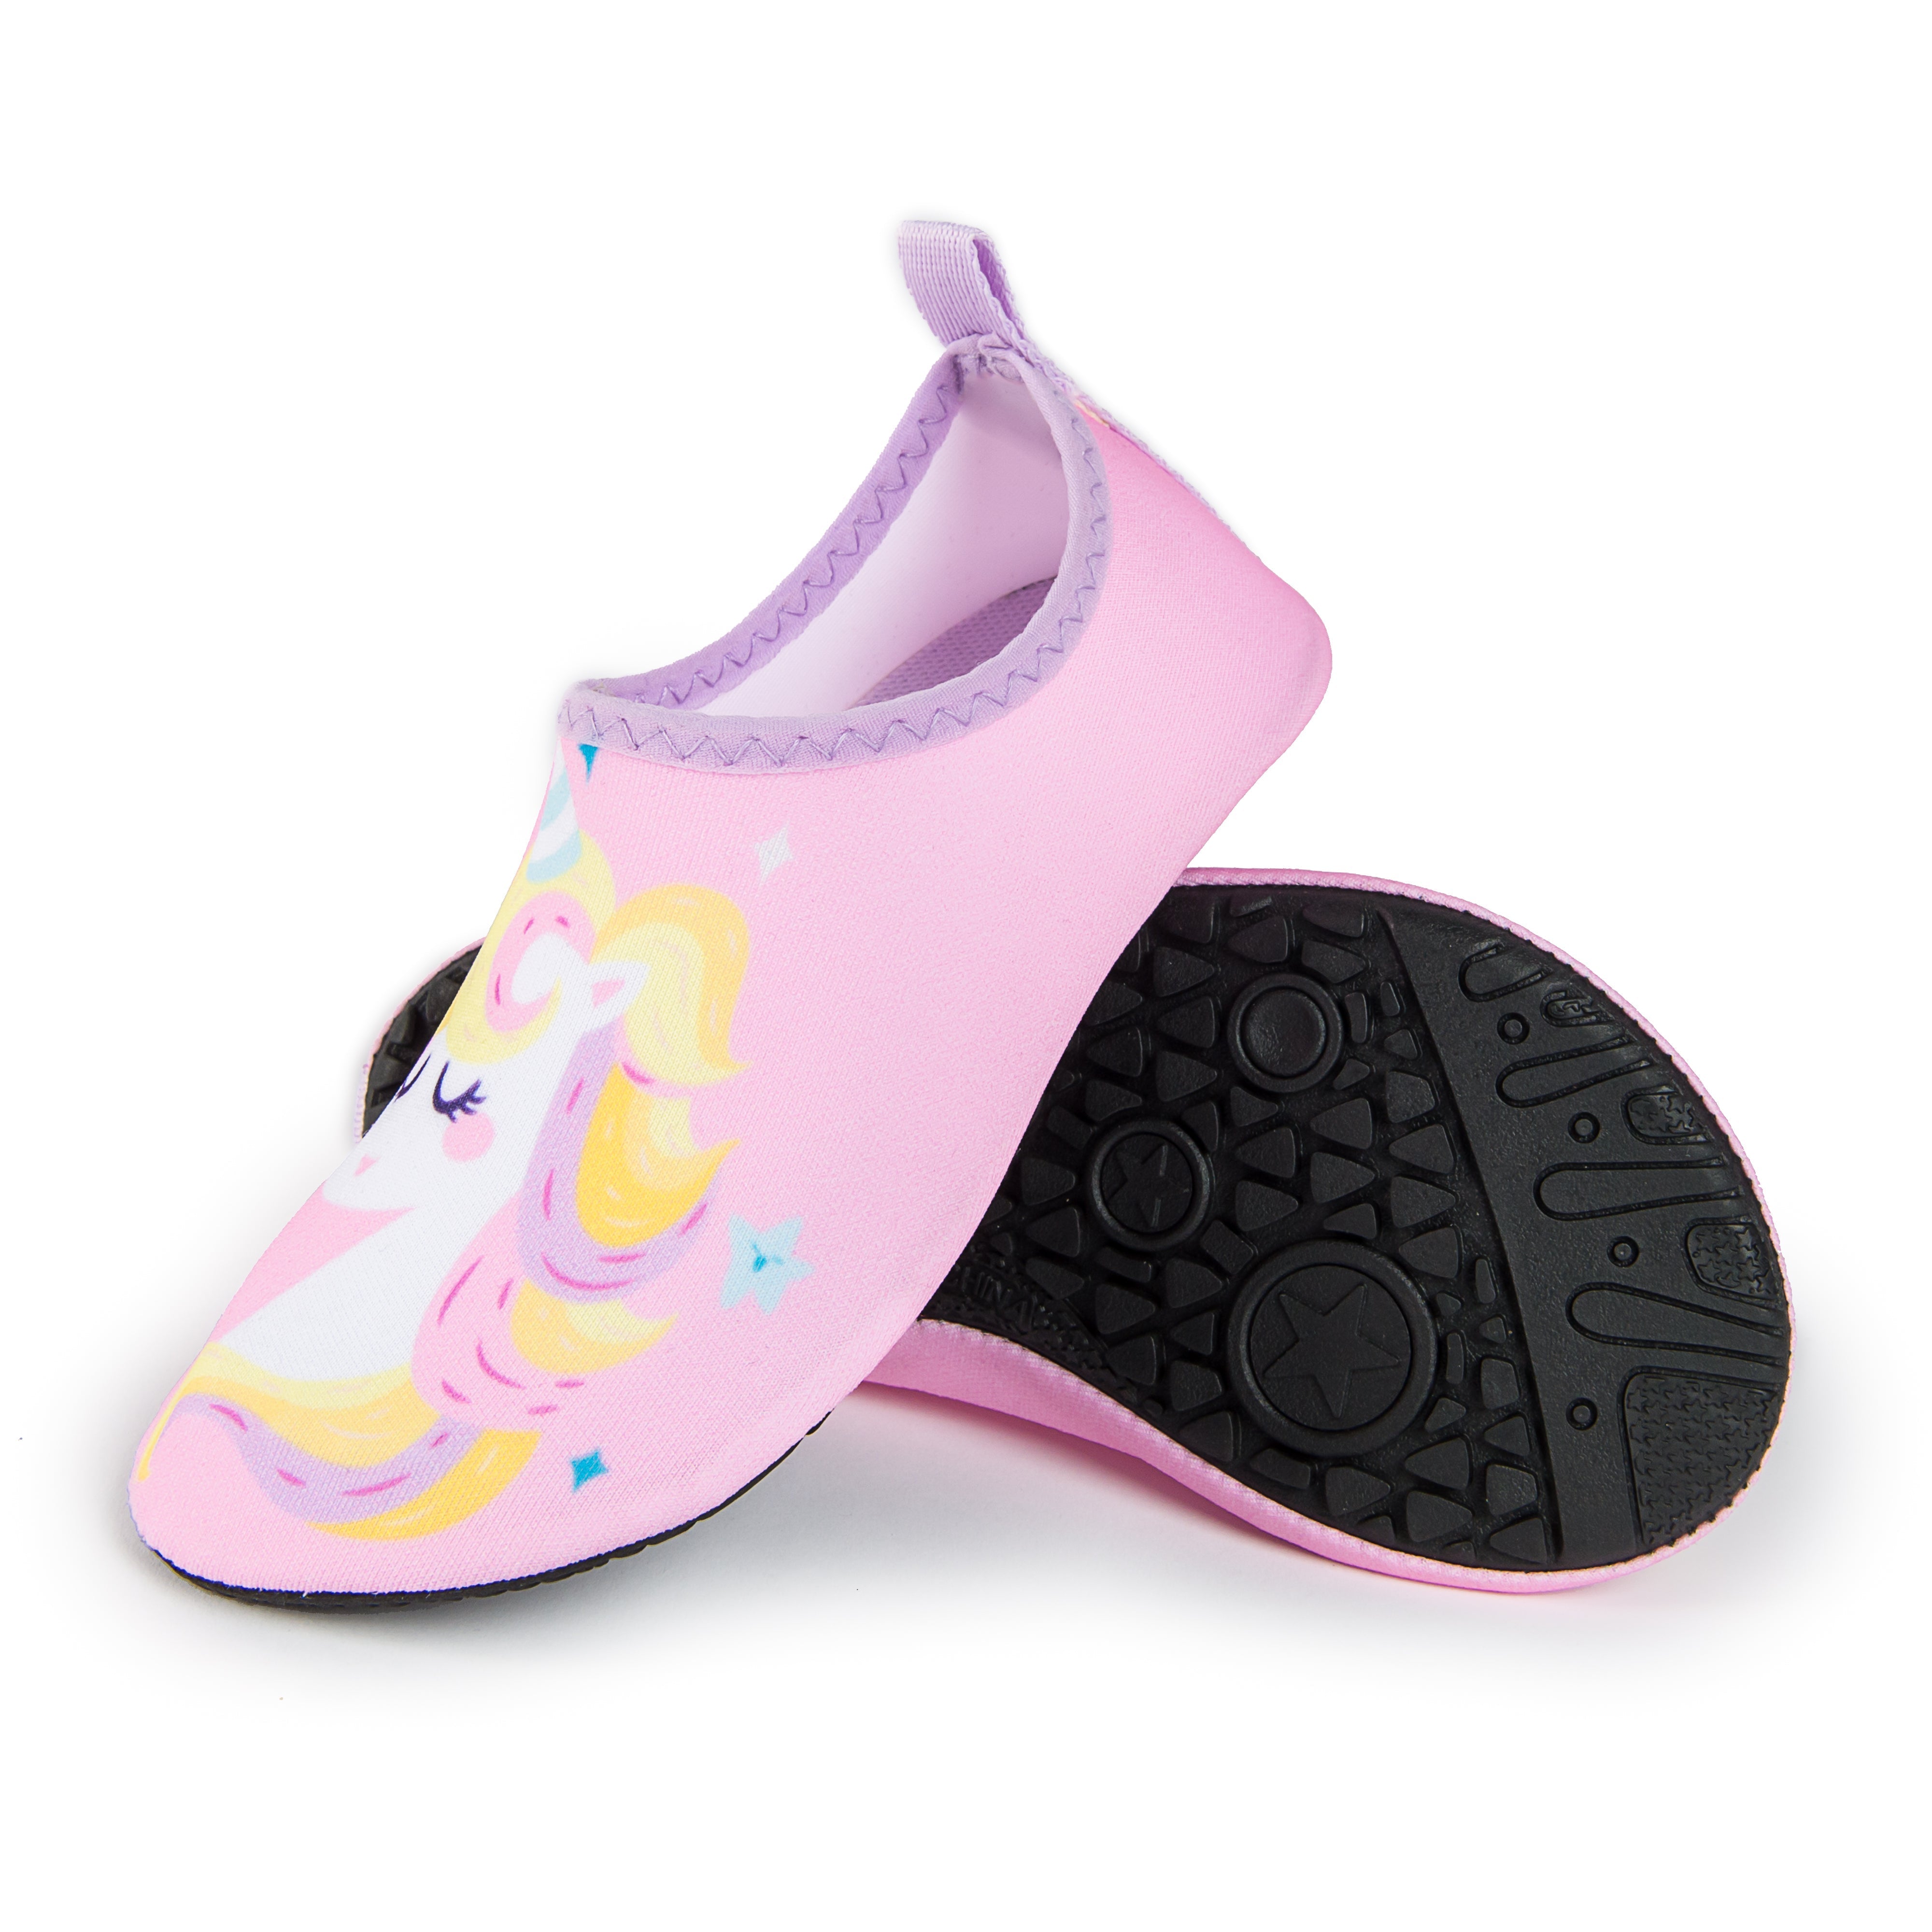 Aqua Sock Shoes Unicorn